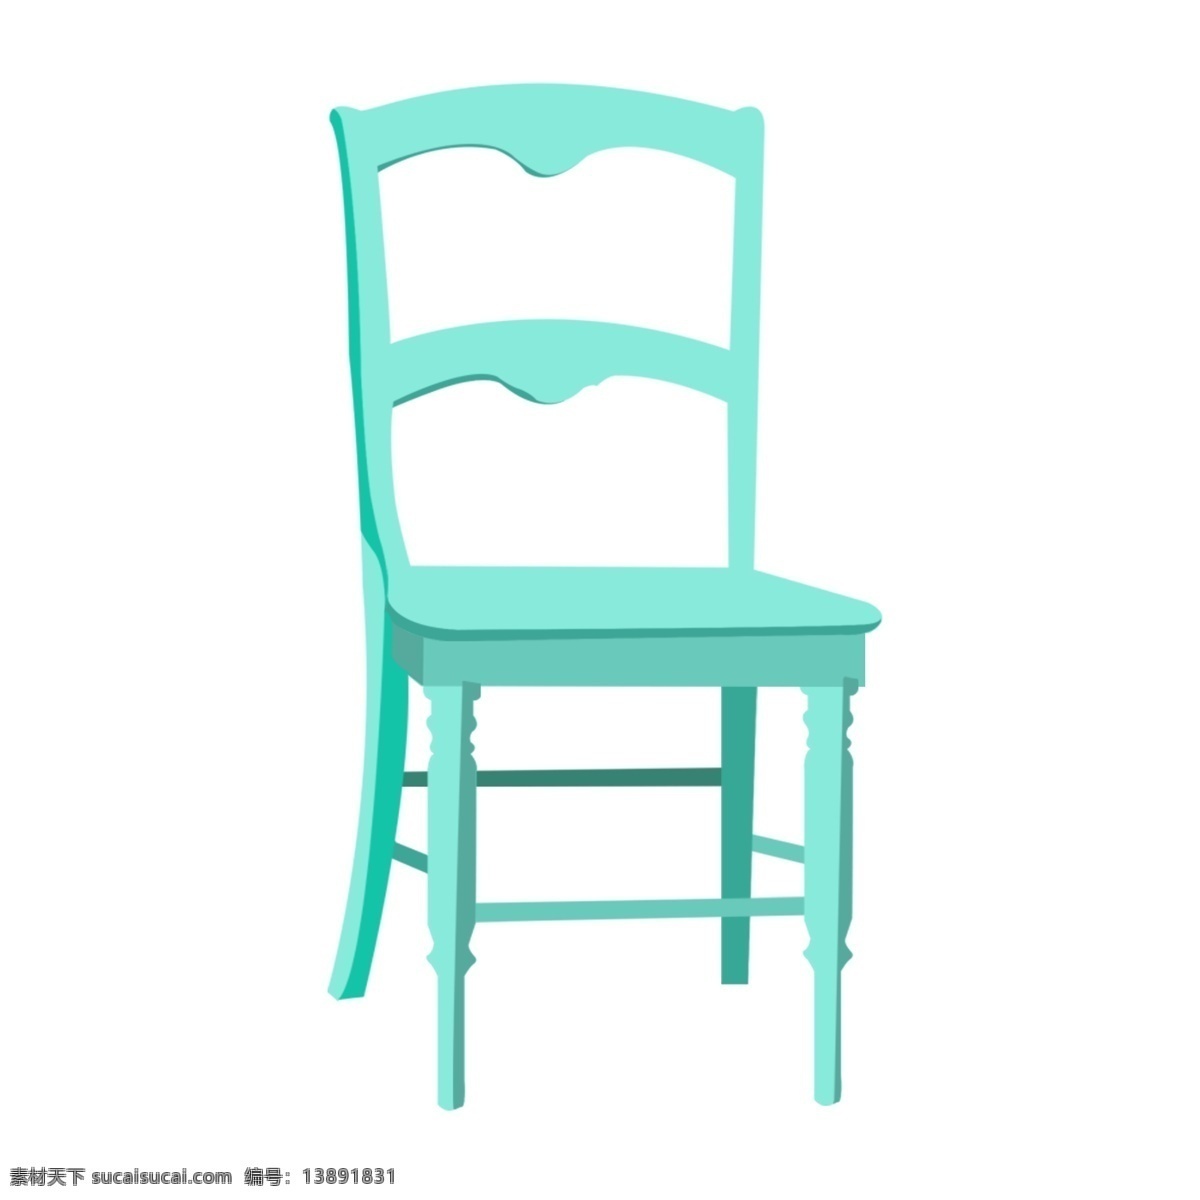 蓝色 椅子 装饰 插画 蓝色的凳子 漂亮的椅子 立体椅子 卡通椅子 家具椅子 木头椅子 办公椅子